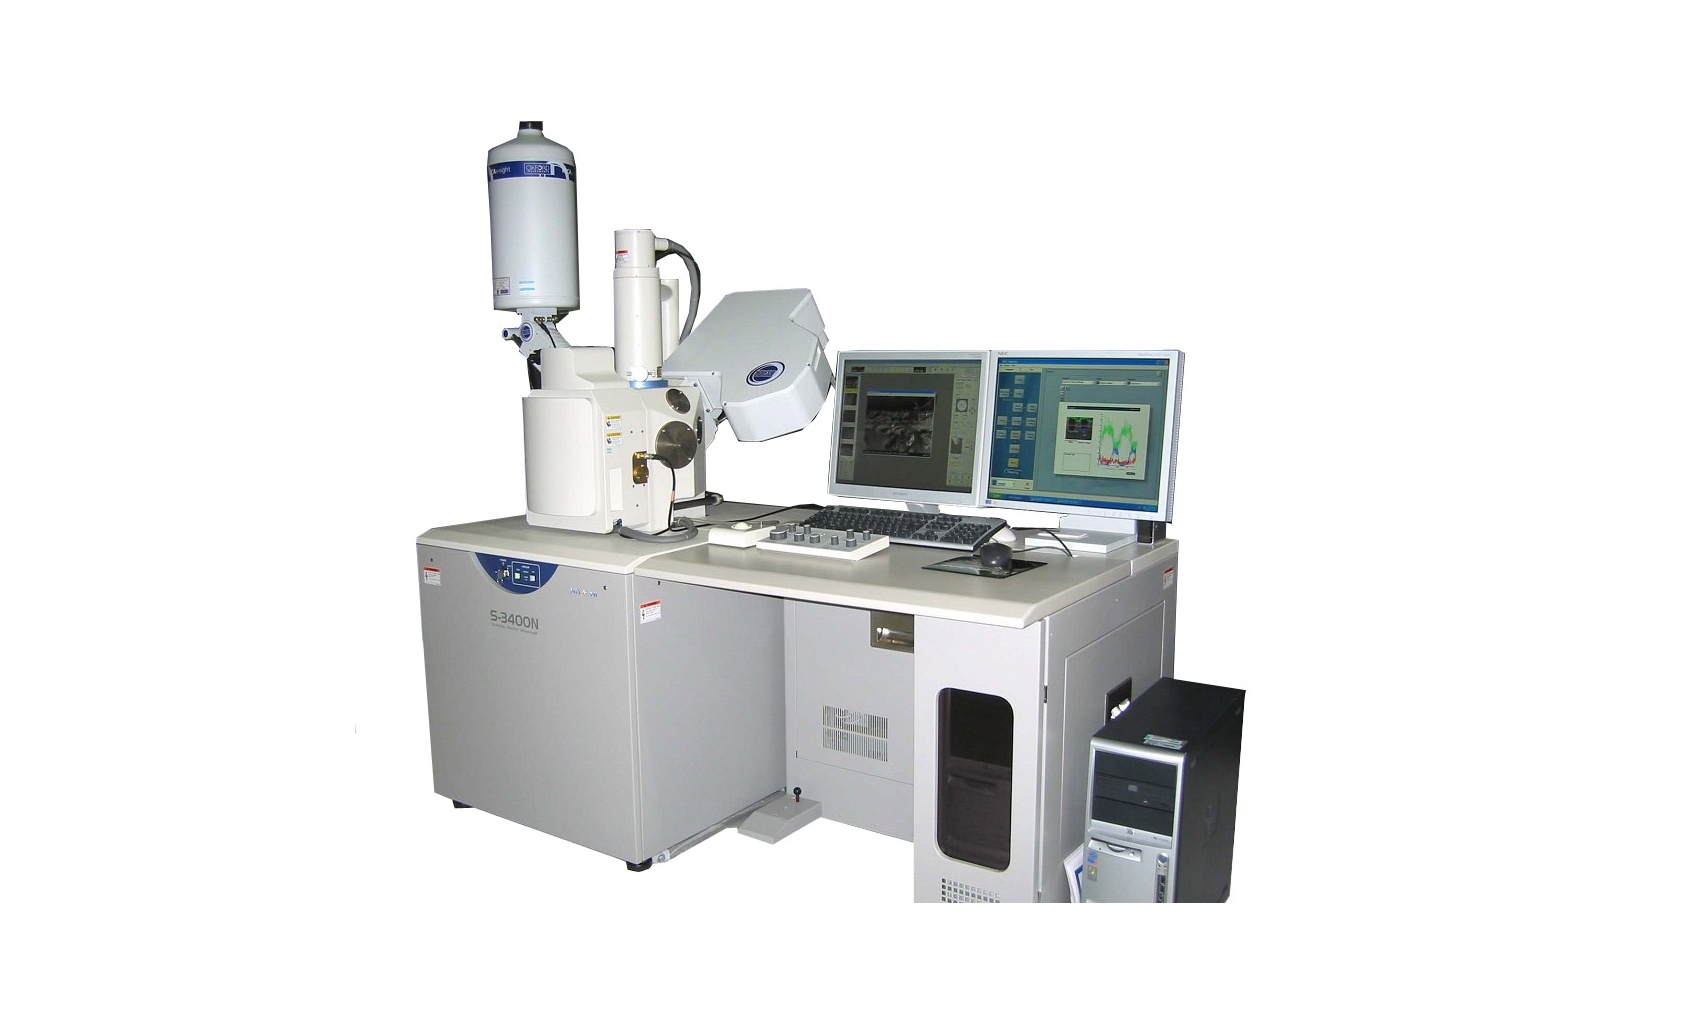 河南科技大学扫描电子显微镜等仪器设备采购项目招标